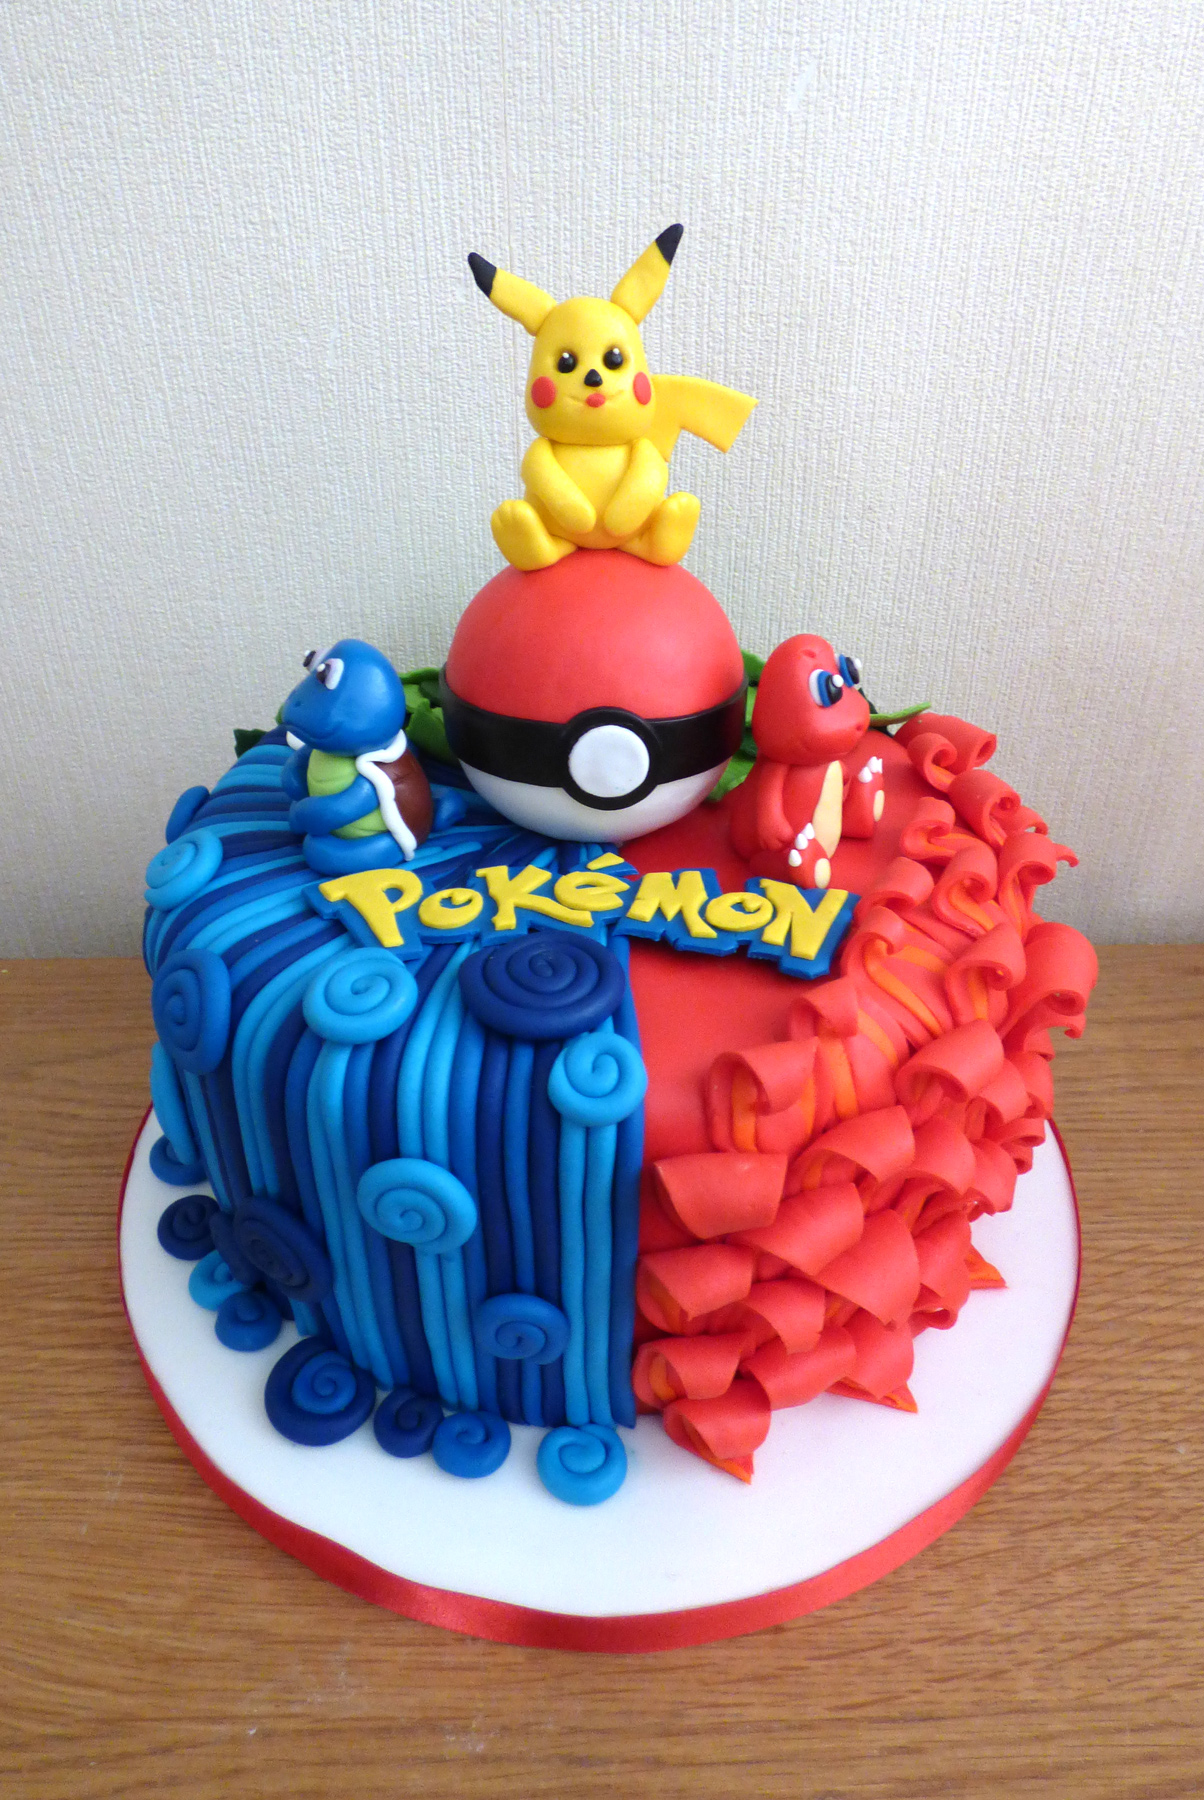 Bulbasaur 2 Pokemon Cake, A Customize Pokemon cake